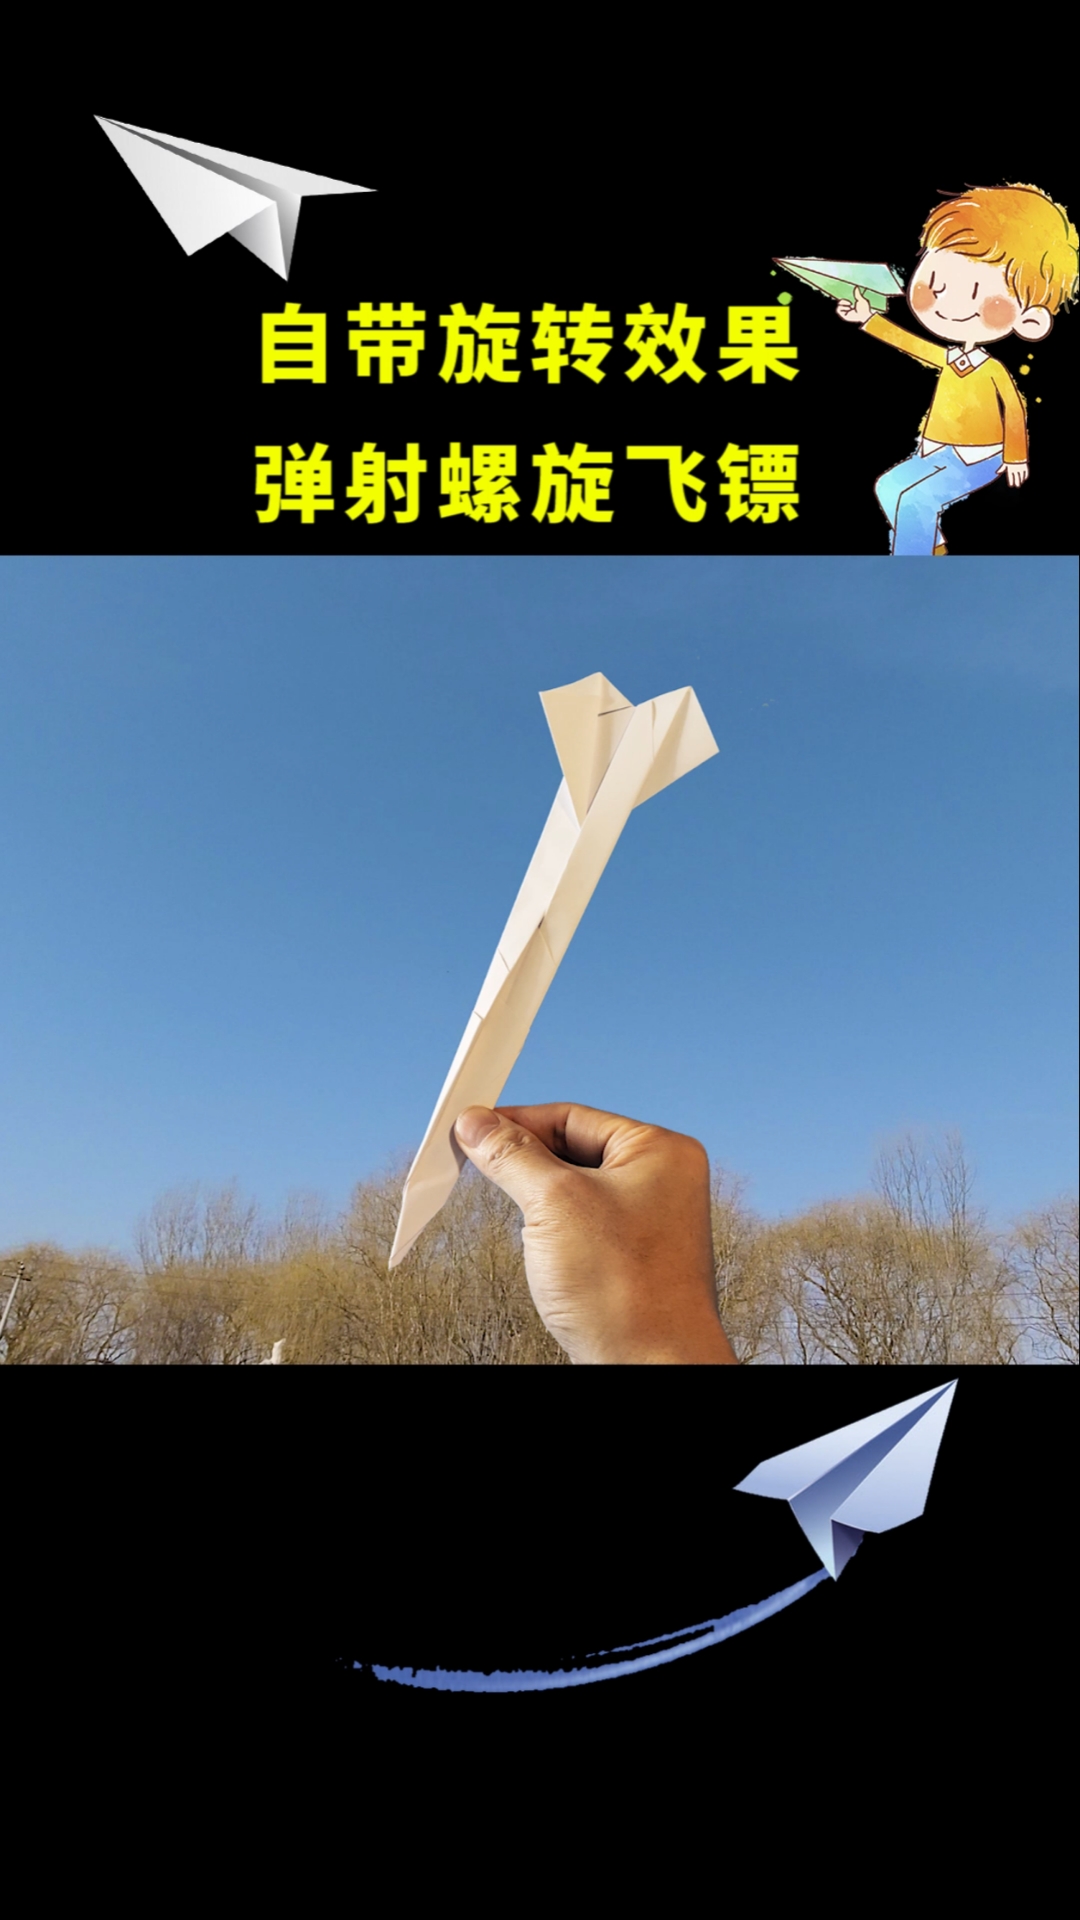 弹射纸飞机制作方法图片